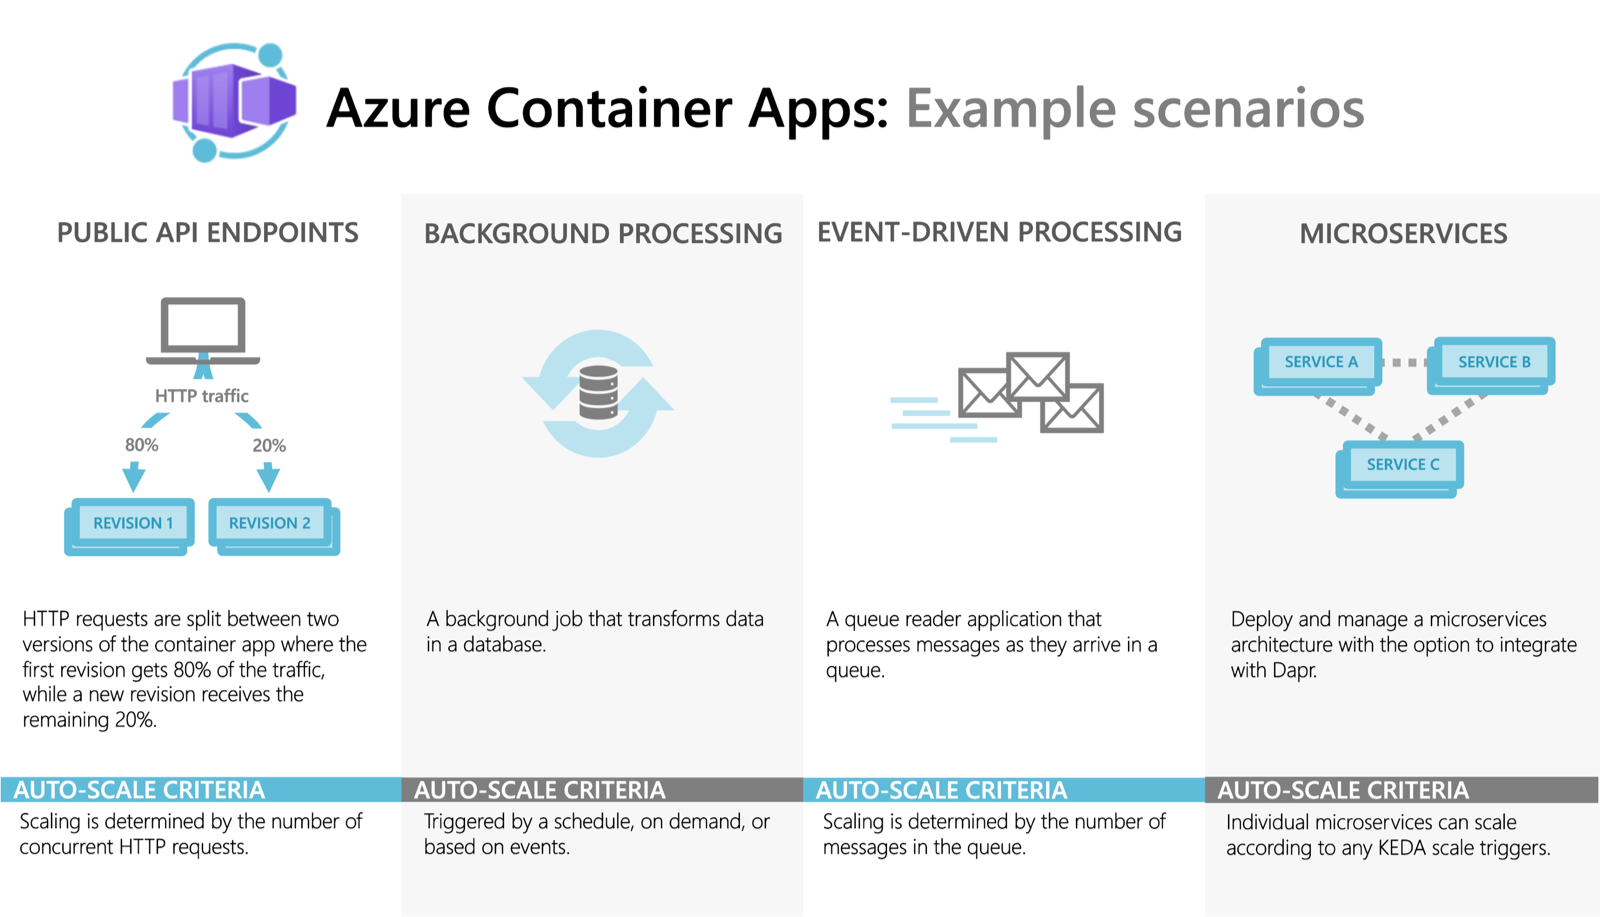 Exemples de scénario pour Azure Container Apps.